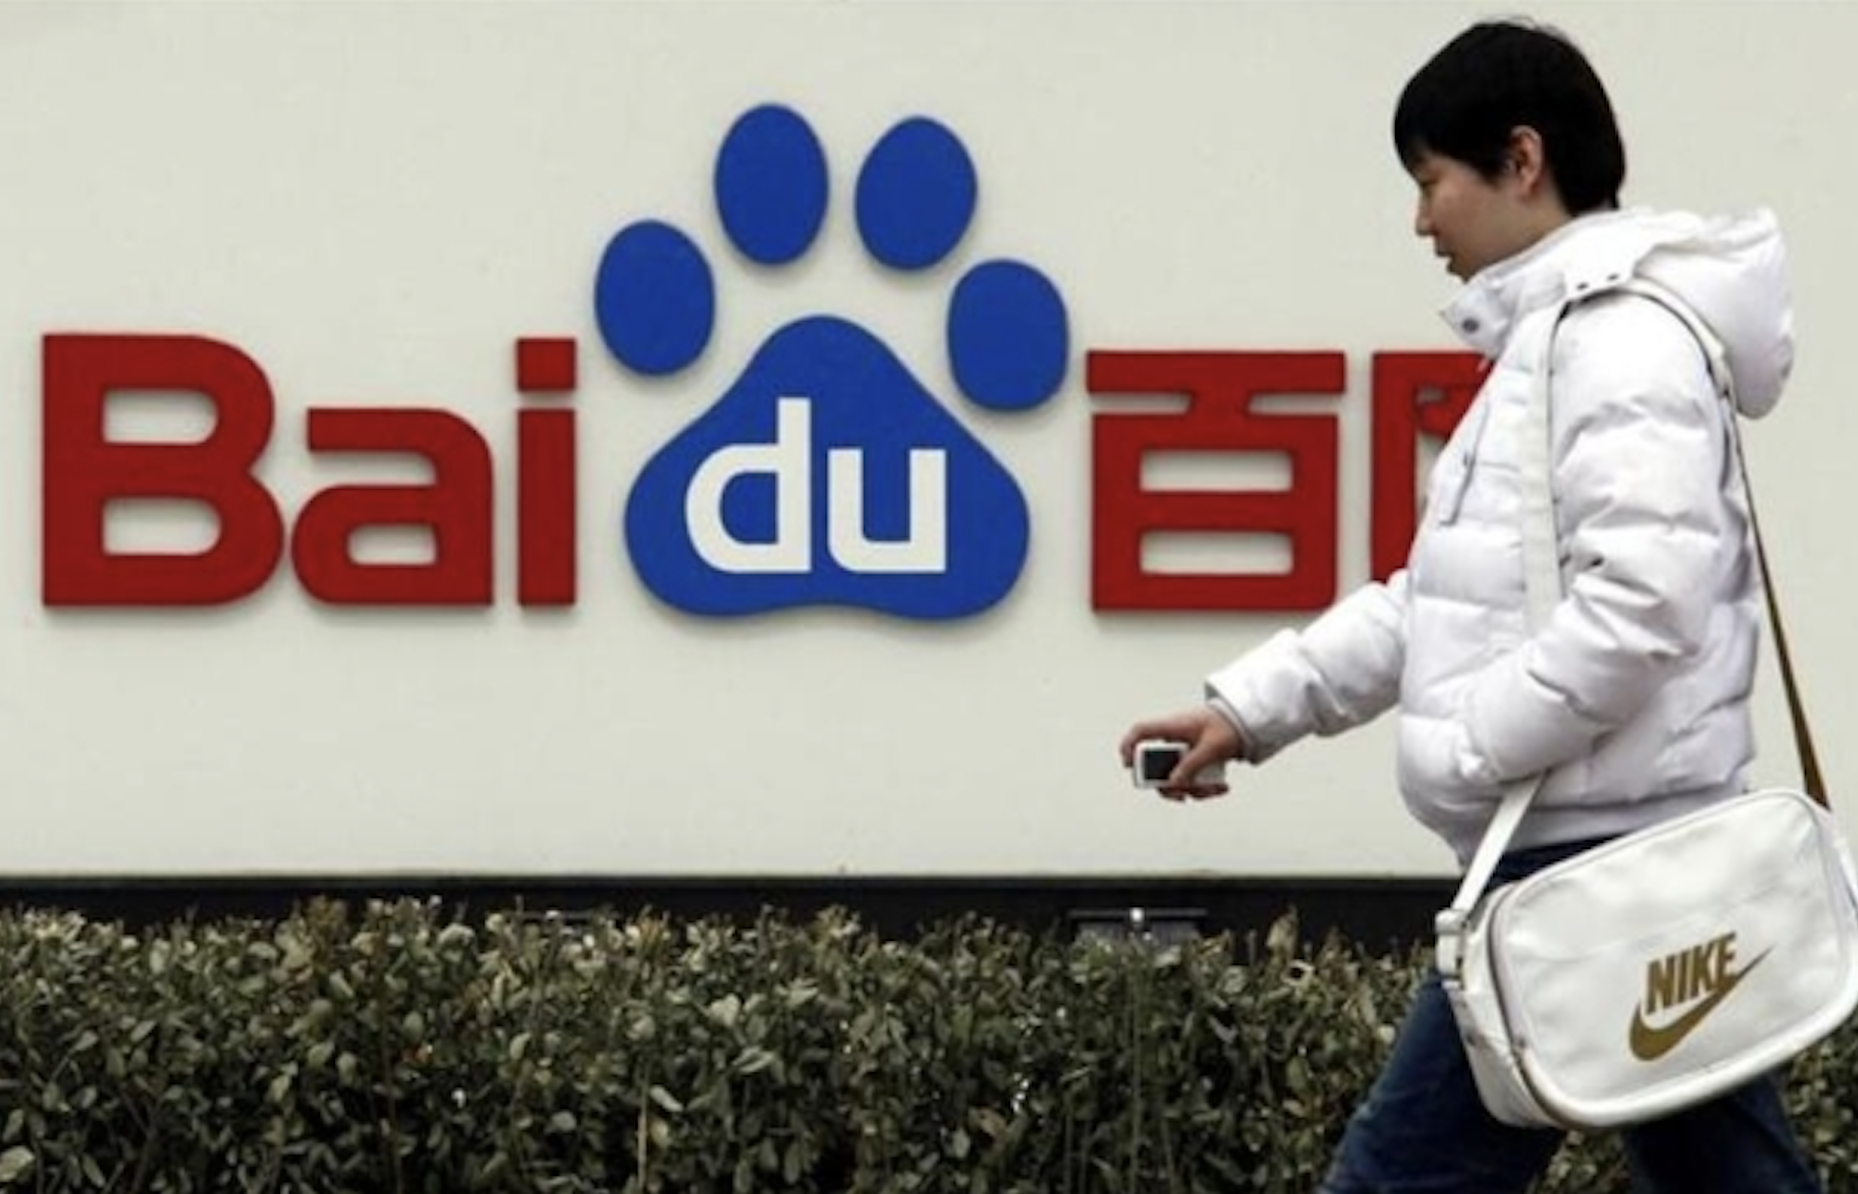 Ejecutiva del gigante chino Baidu dimite tras polémicos elogios a horas extras: medio